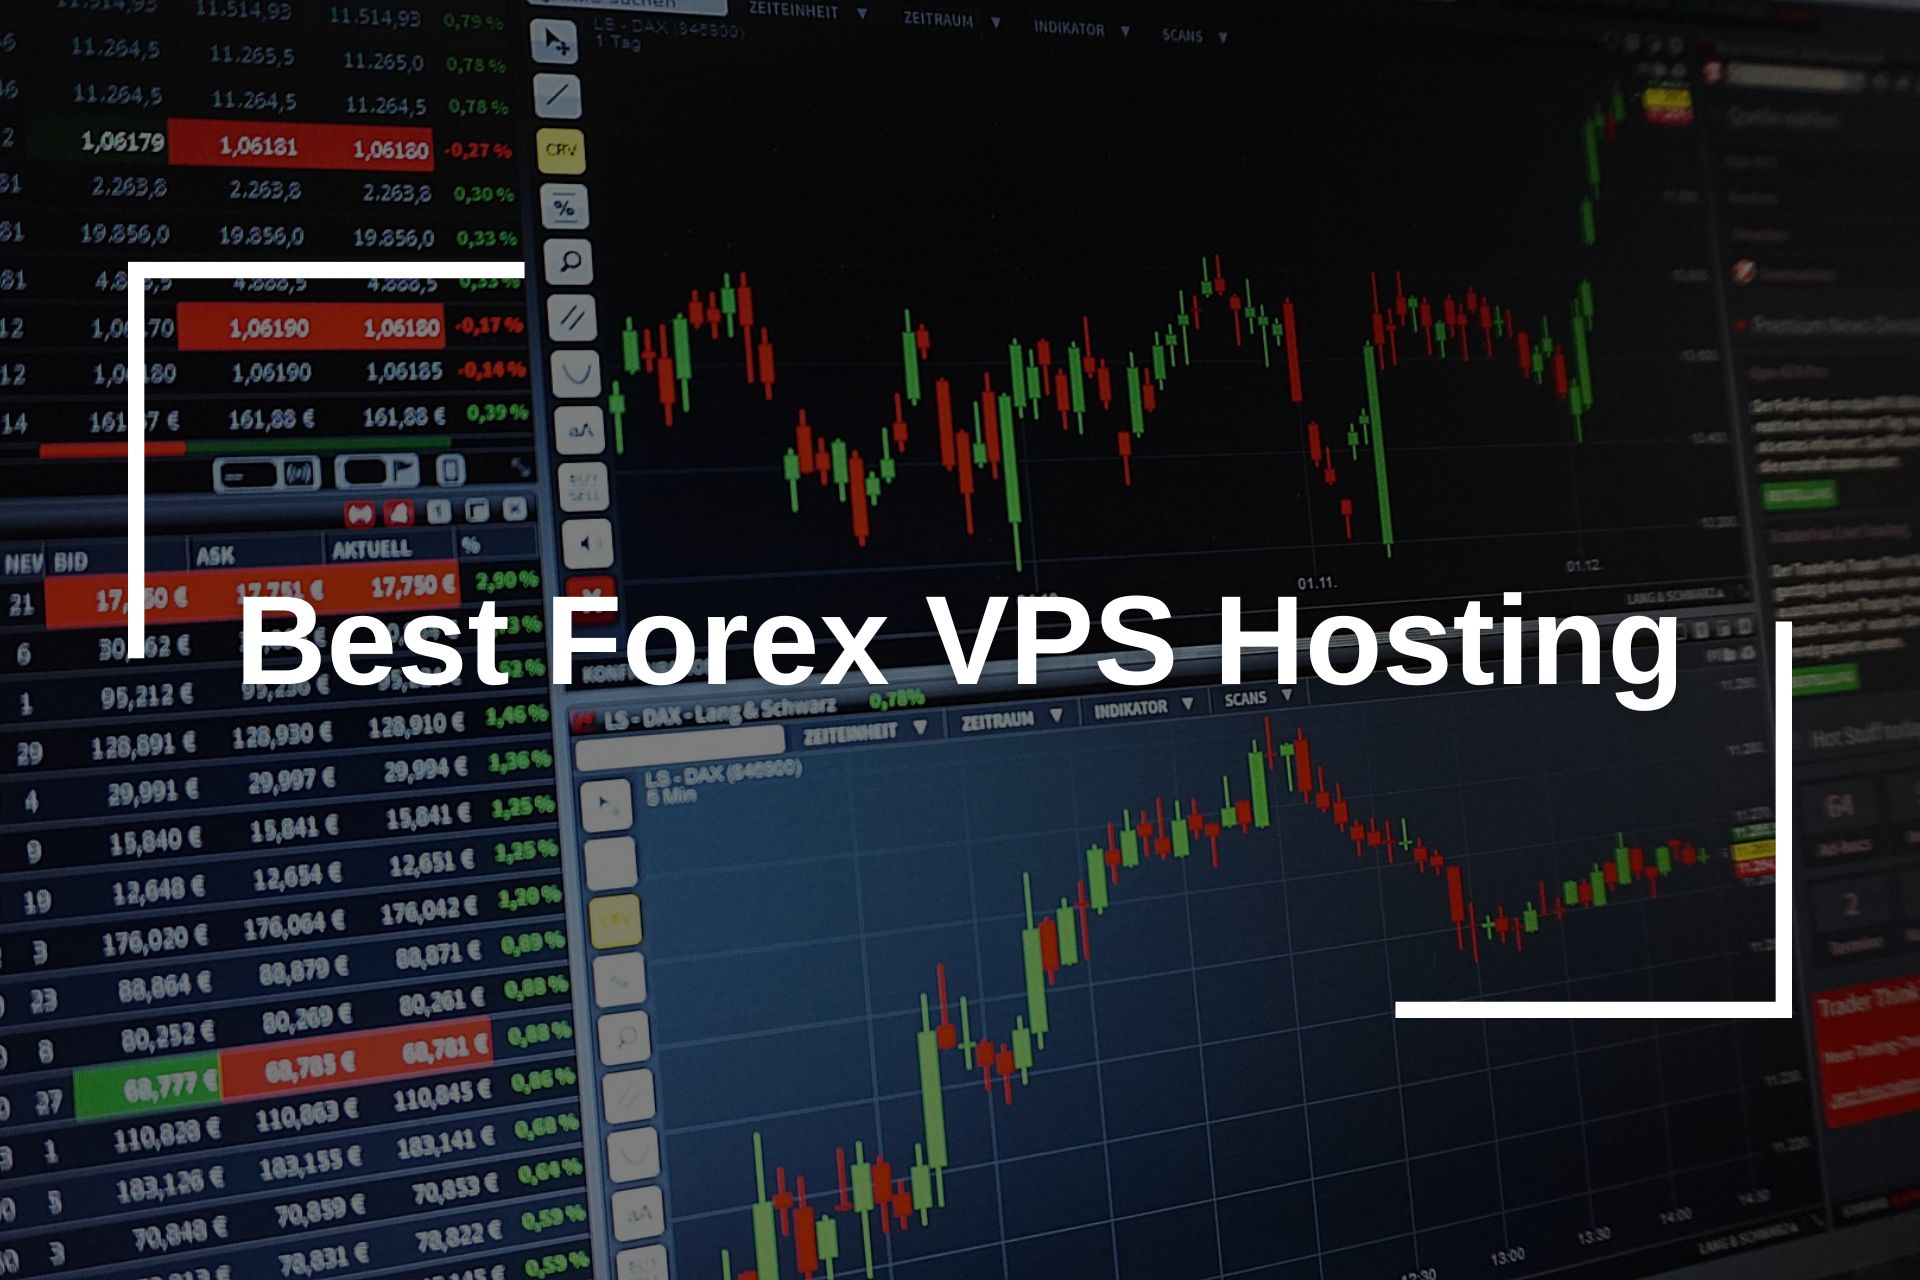 Best Forex VPS Hosting